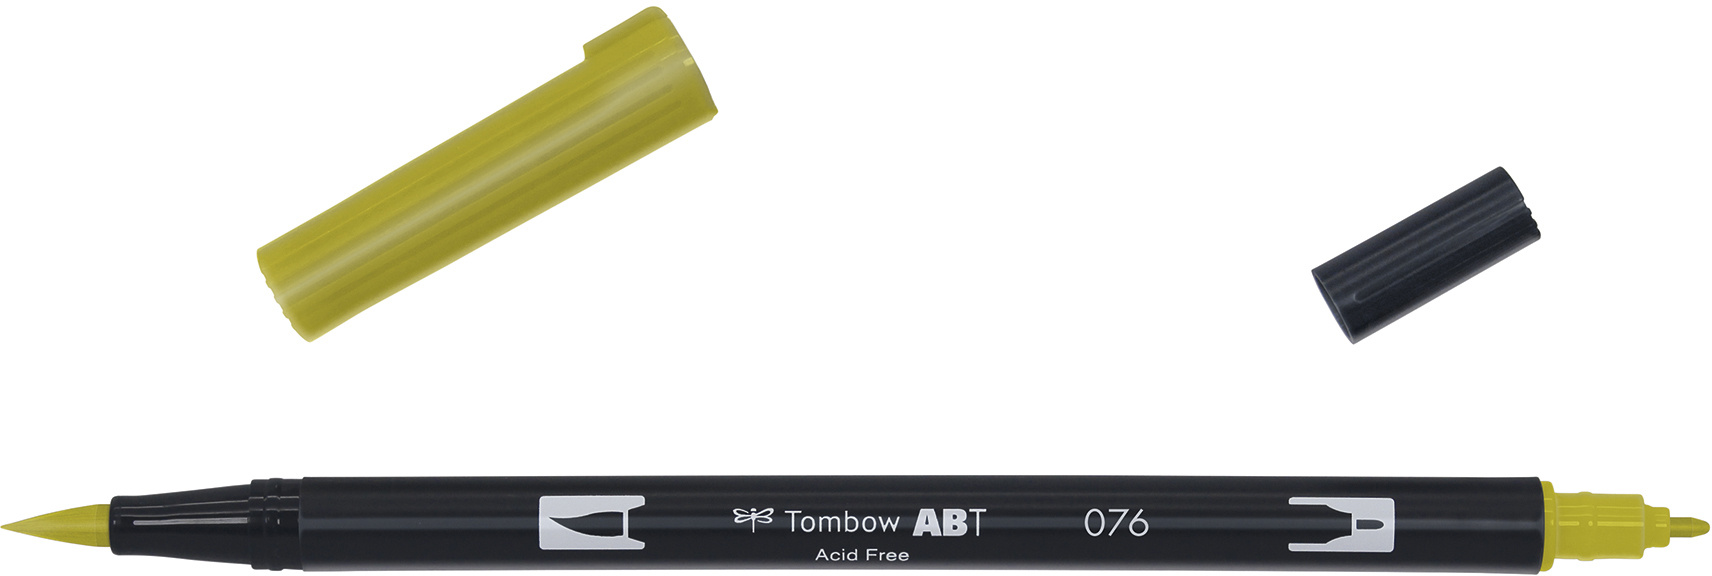 TOMBOW Dual Brush Pen ABT 076 ocre vert